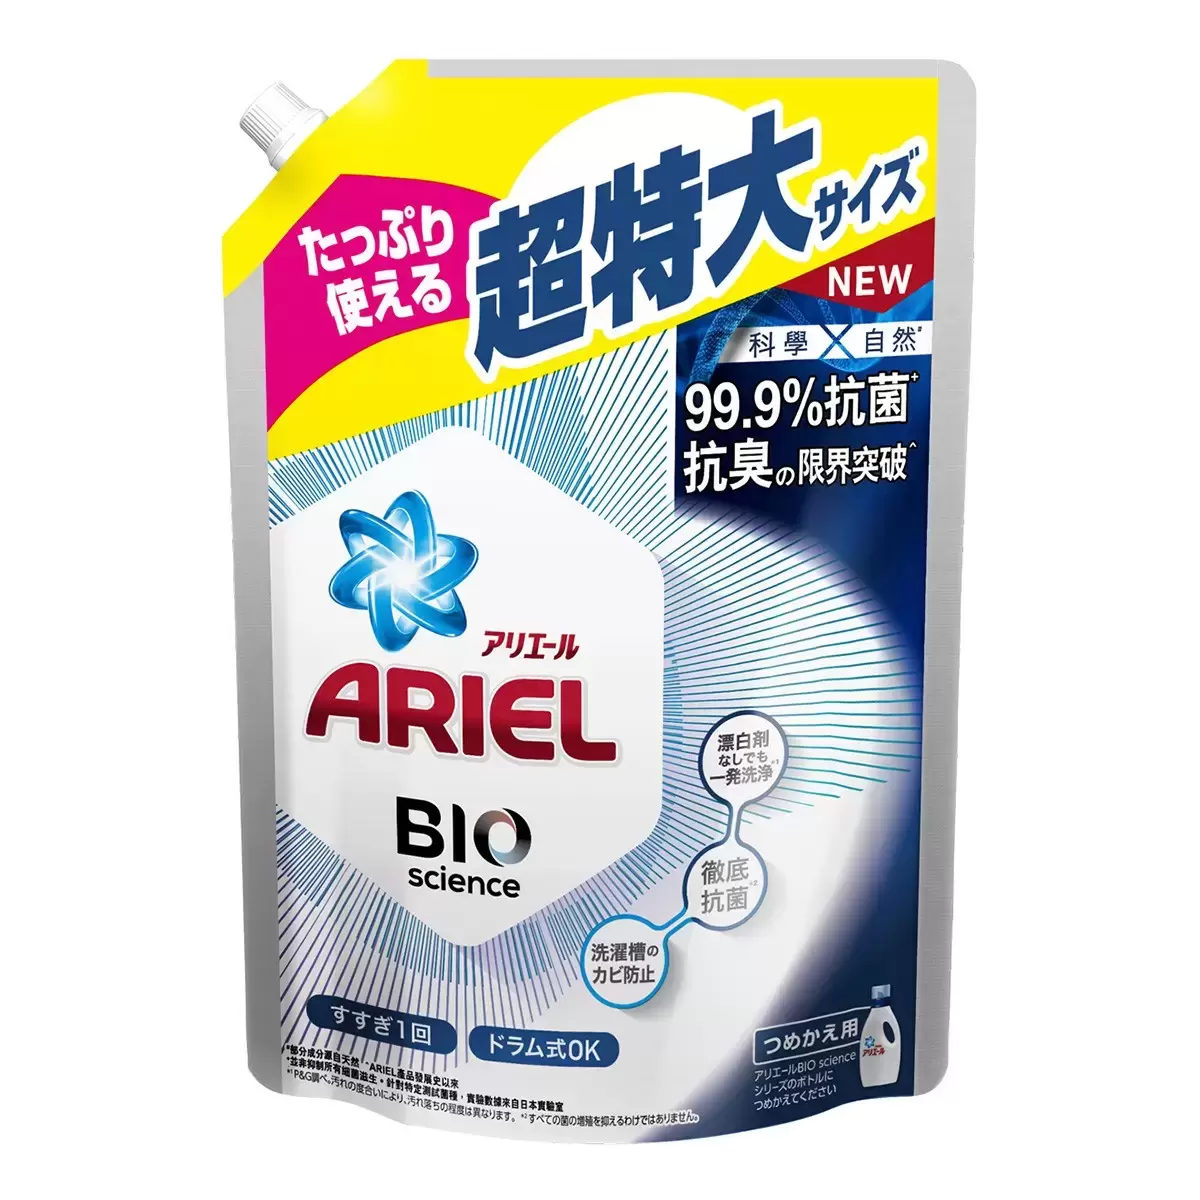 Ariel 抗菌抗臭洗衣精補充包 1260公克 X 6入